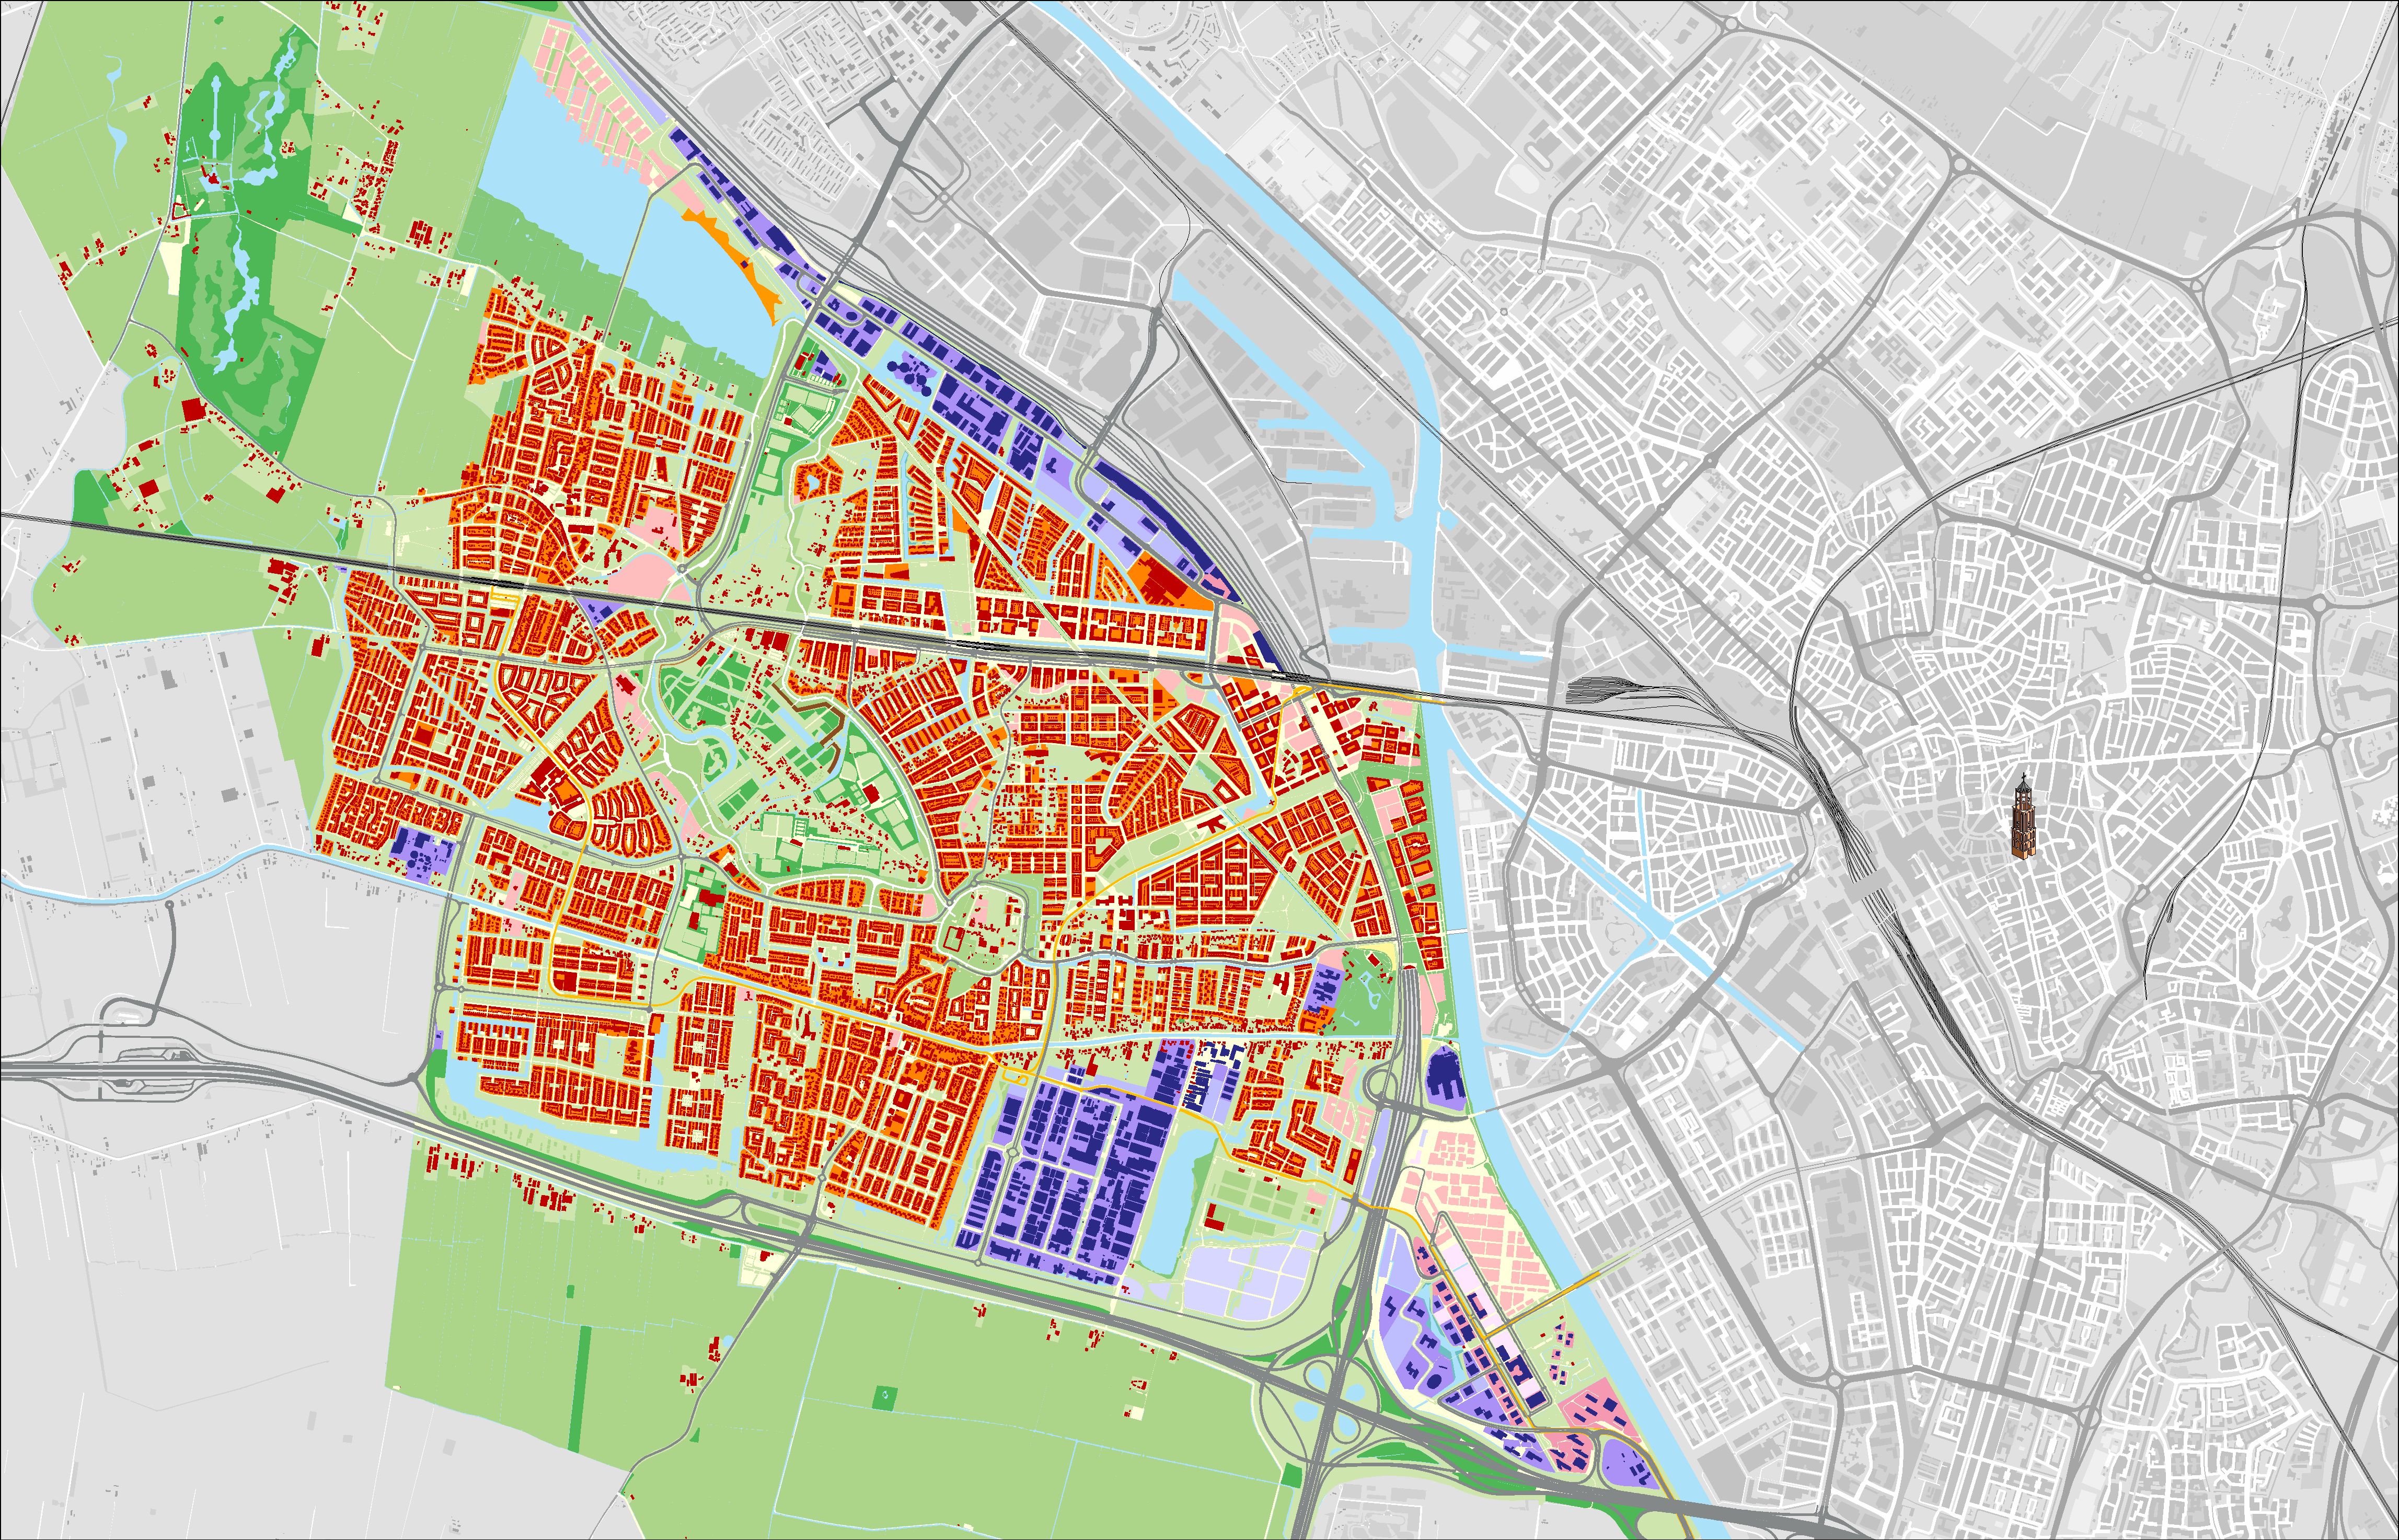 Plankaart waarop te zien is welke buurten nog ontwikkeld worden, en hoe de buurten er op de kaart uitzien als ze klaar zijn